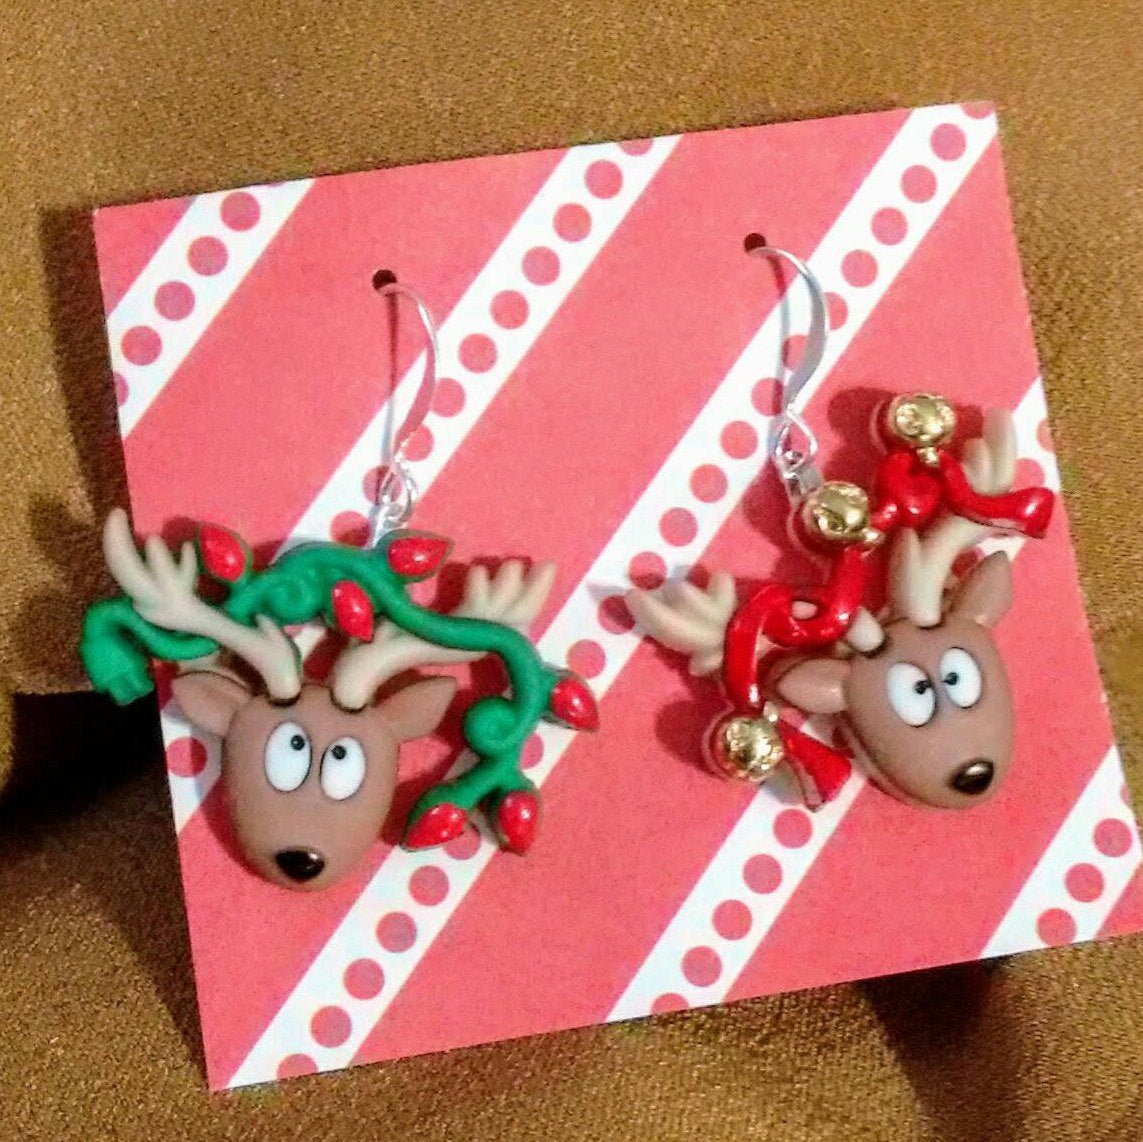 Funny Christmas reindeer with bells earrings